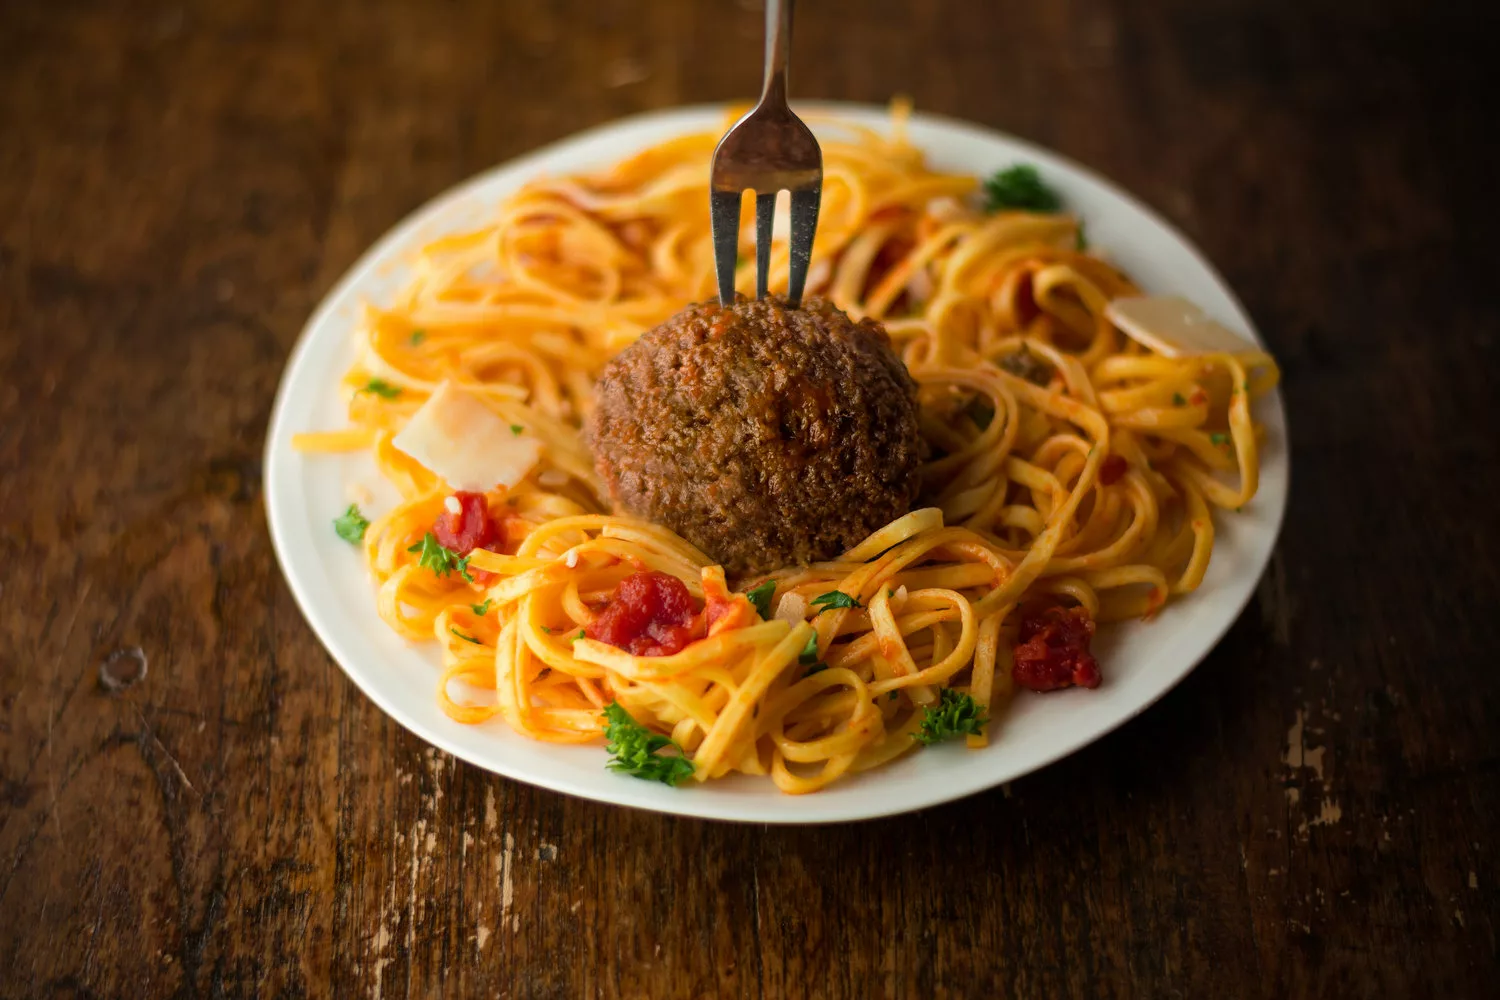 Europäische Kommission zweifelt an Durchsetzbarkeit von Italiens Gesetz zum Verbot von kultiviertem Fleisch